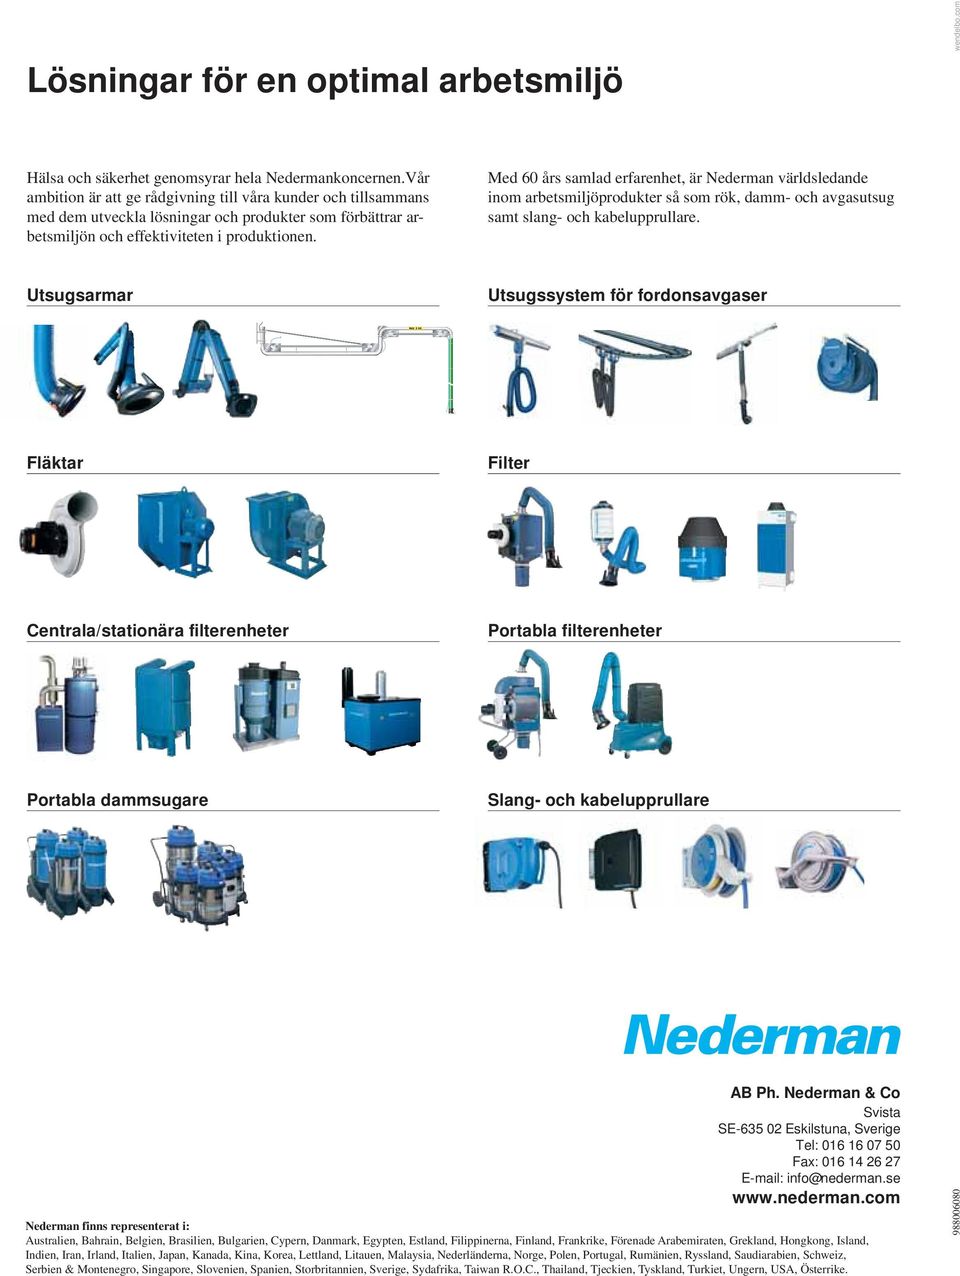 Med 60 års samlad erfarenhet, är Nederman världsledande inom arbetsmiljöprodukter så som rök, damm- och avgasutsug samt slang- och kabelupprullare.